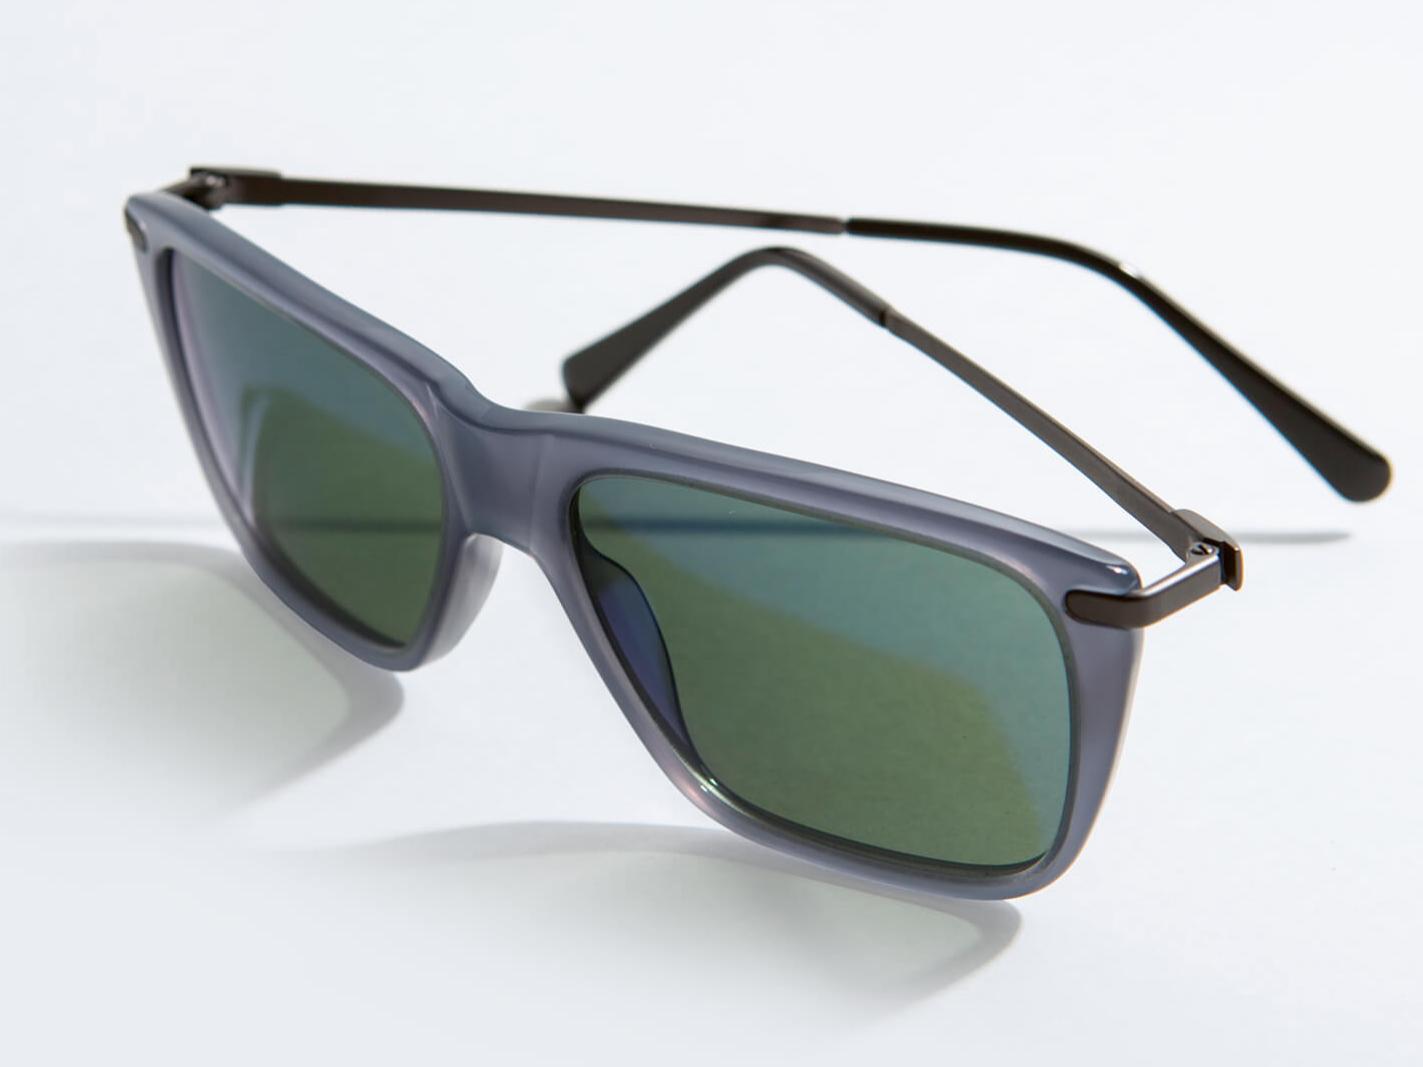 Sonnenbrillen für Autofahrer (mittlere bis hohe Lichtintensität)